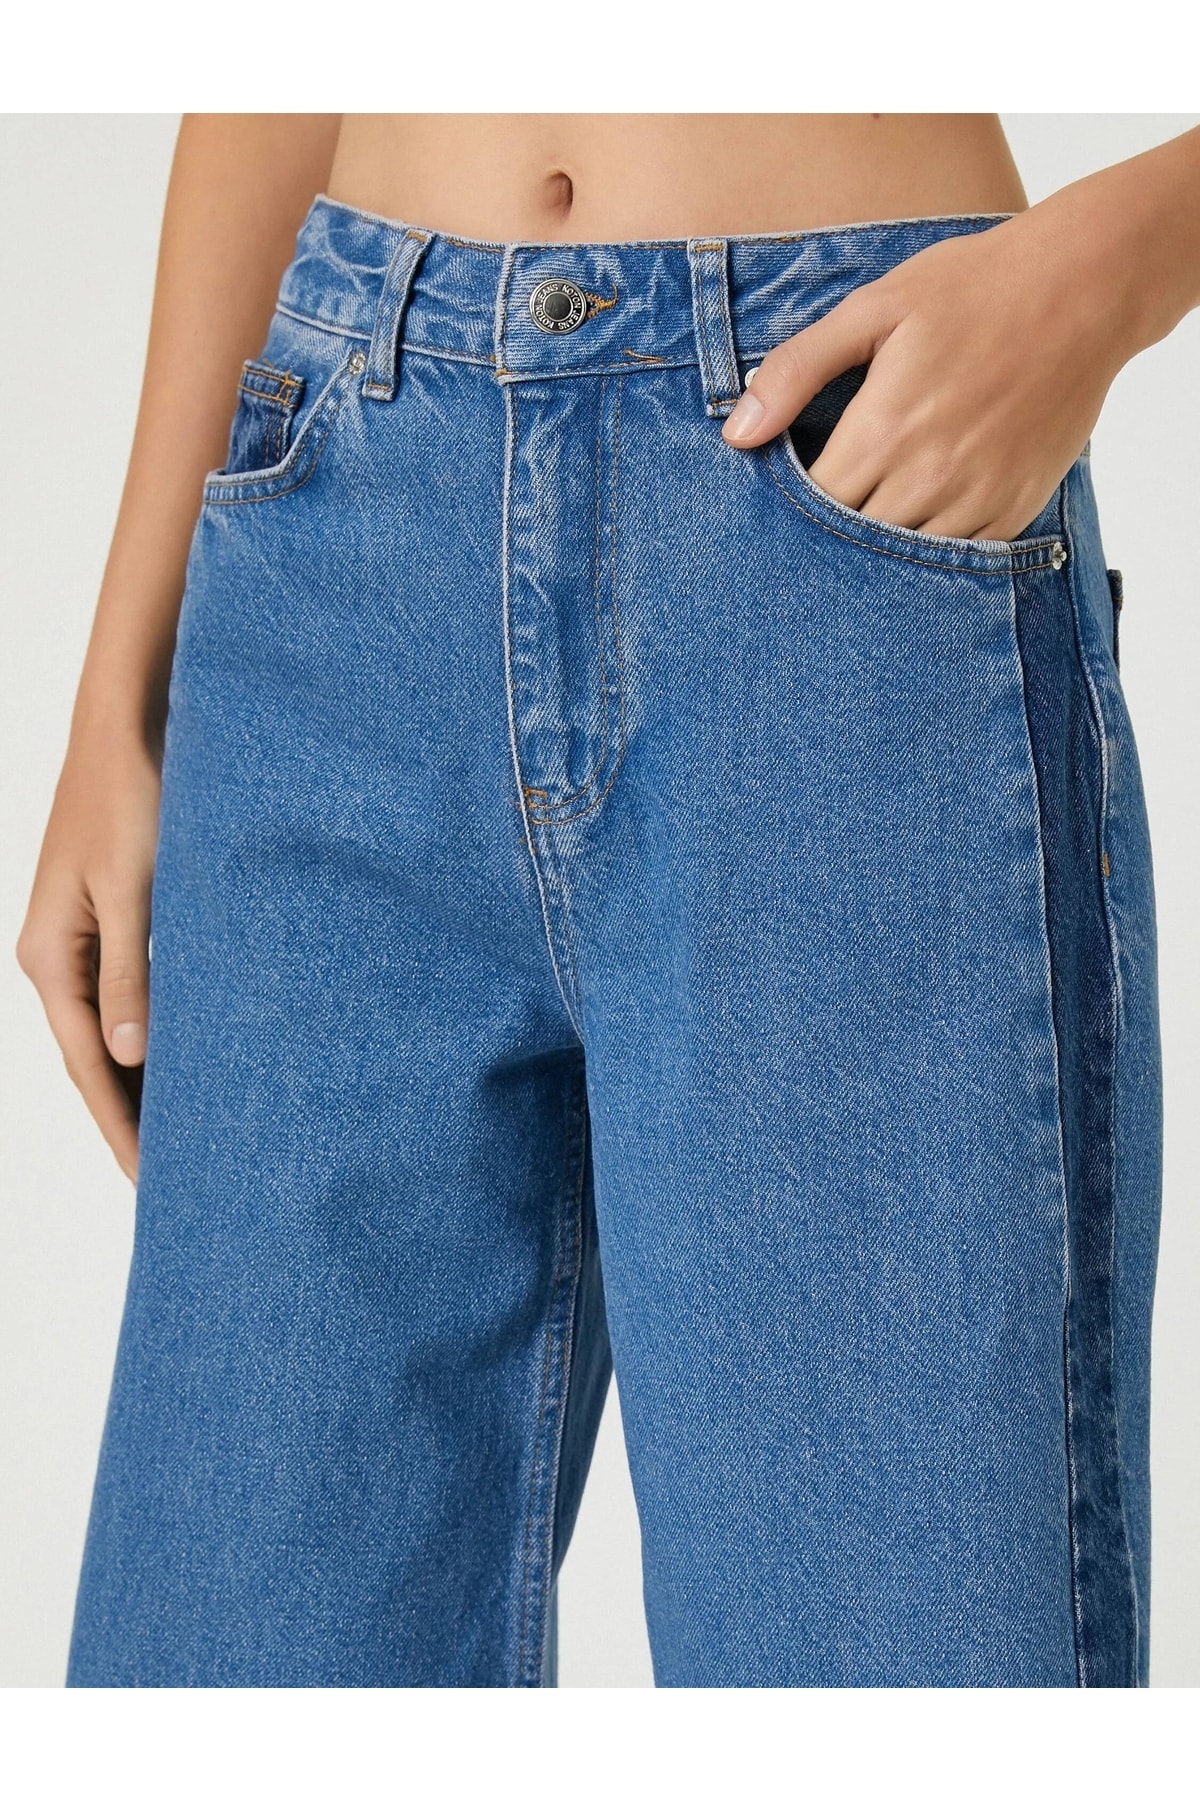 Женские джинсовые брюки среднего цвета индиго Koton, синий